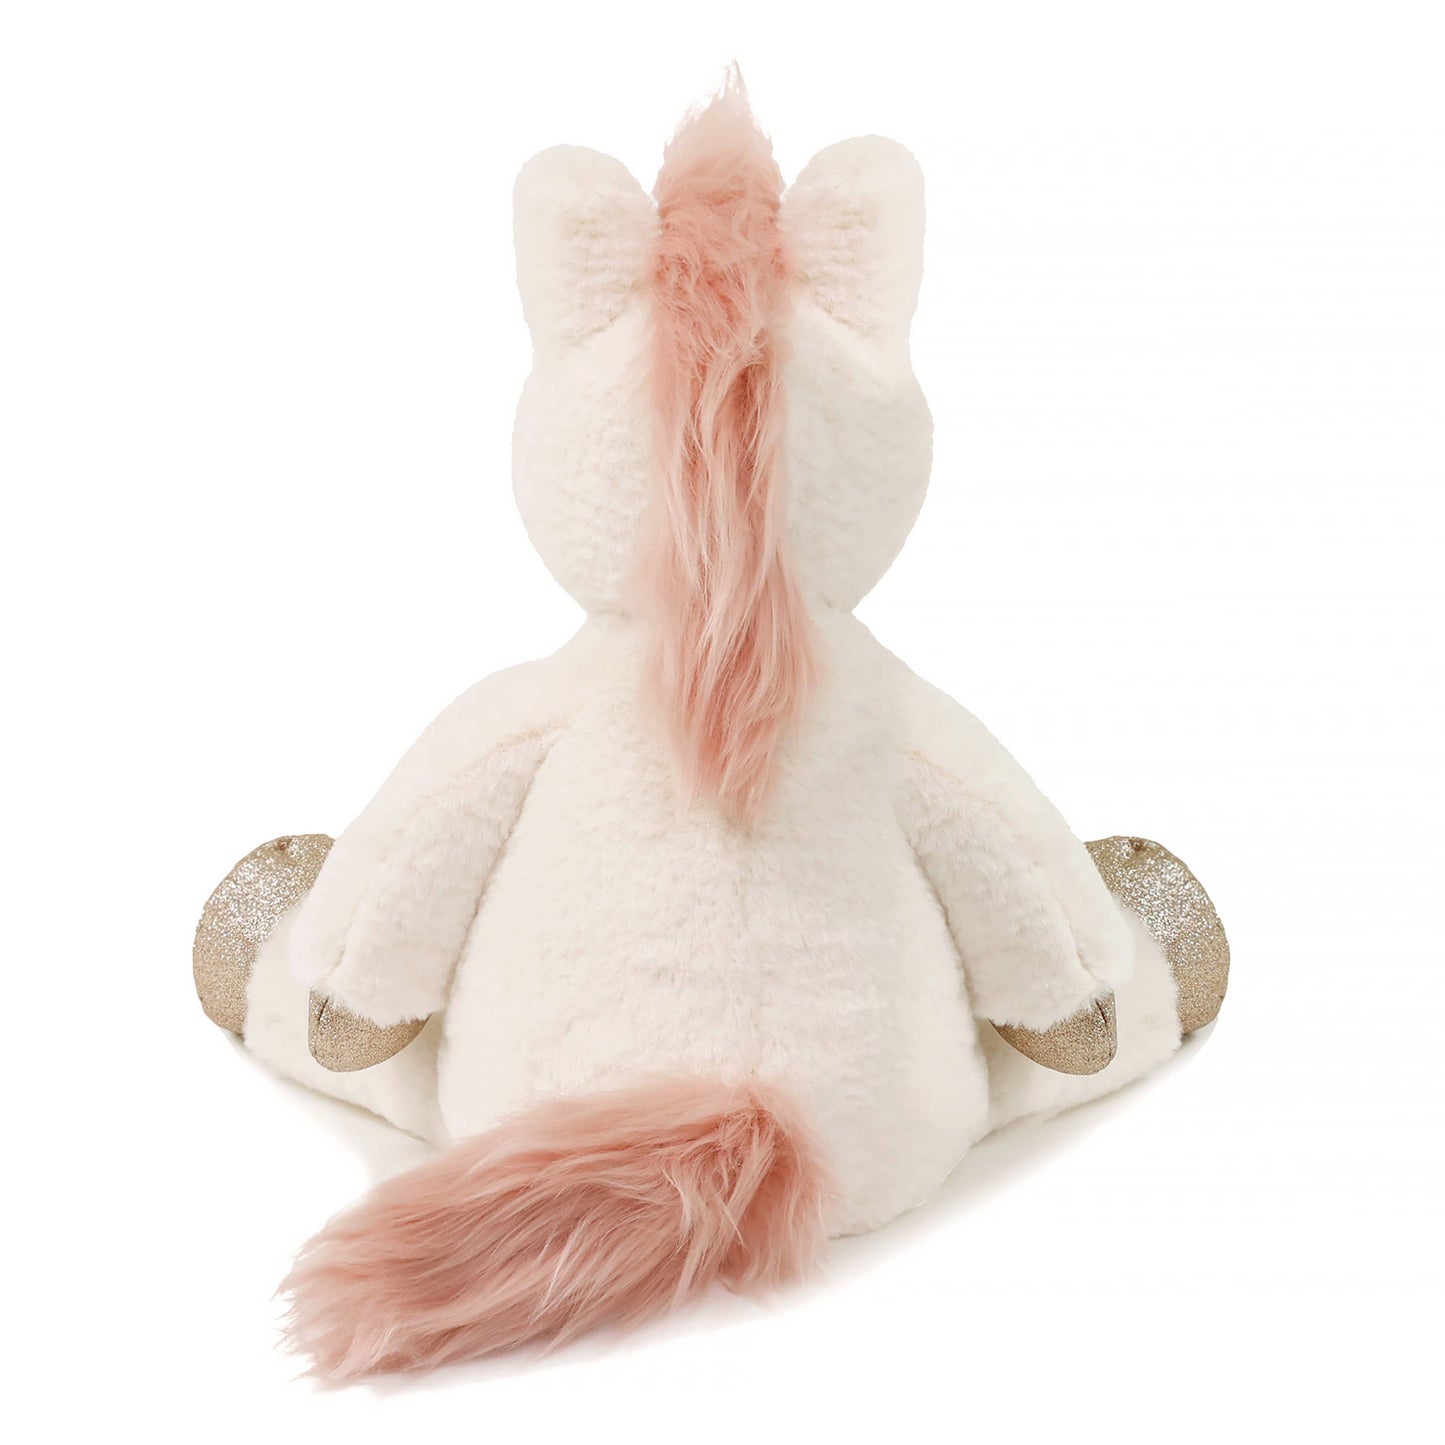 OB Misty Unicorn (Vegan Angora) Soft Toy 14"